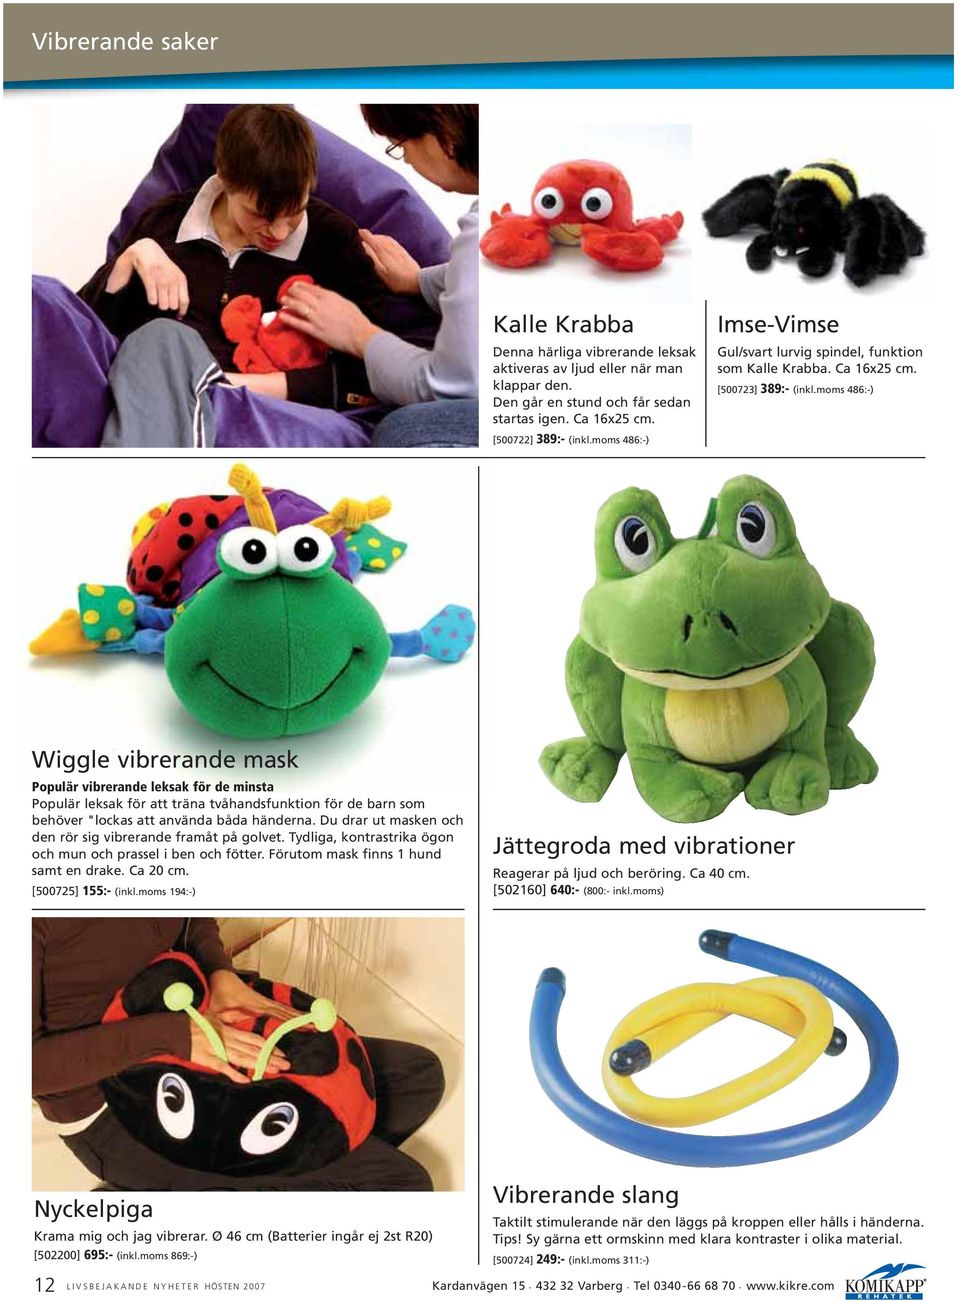 moms 486:-) Wiggle vibrerande mask Populär vibrerande leksak för de minsta Populär leksak för att träna tvåhandsfunktion för de barn som behöver "lockas att använda båda händerna.